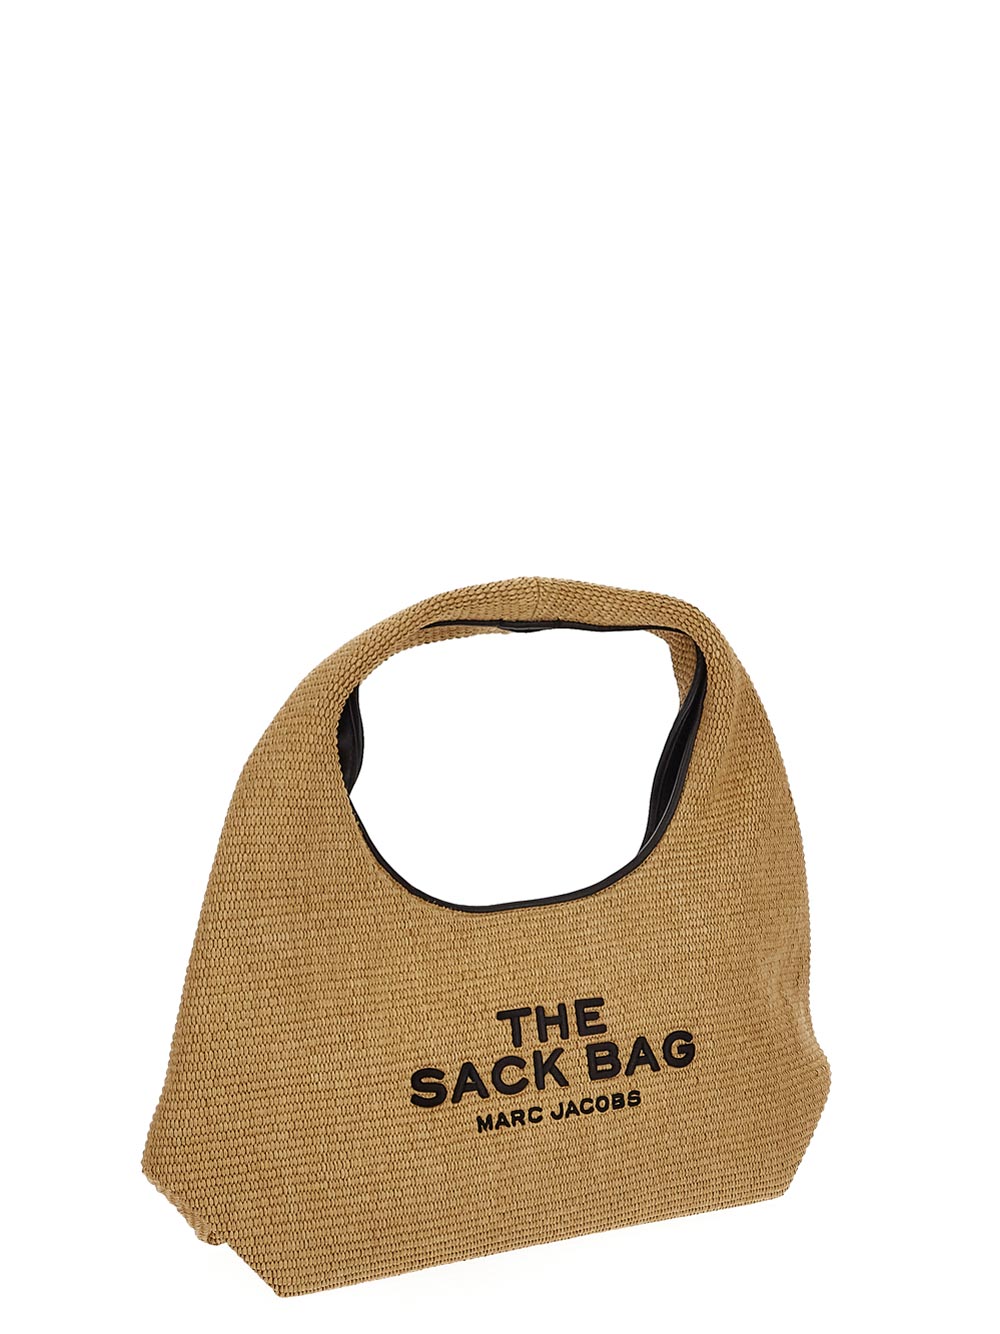 Marc Jacobs The Woven Sack Bag